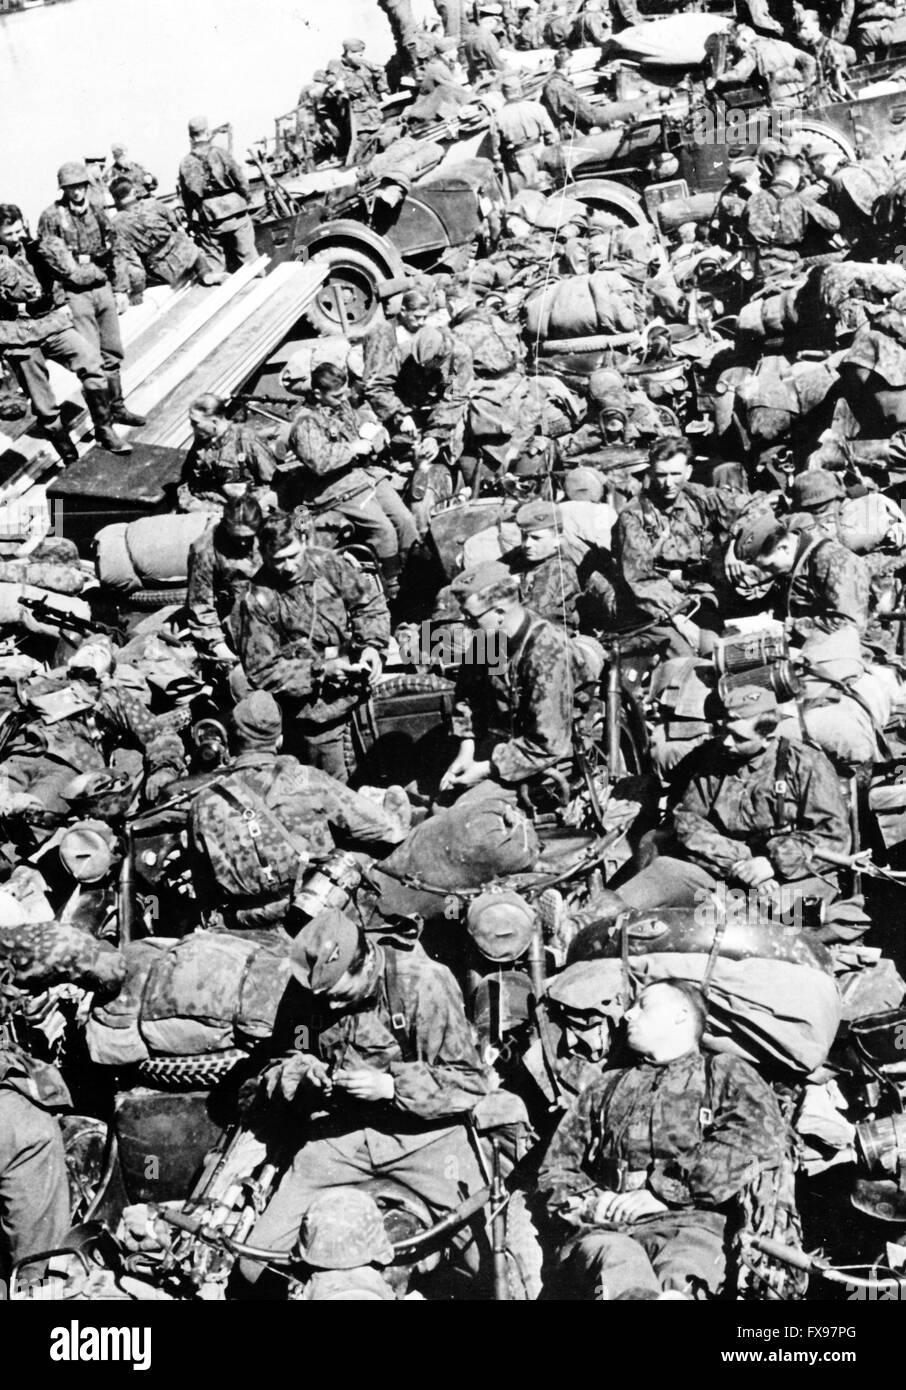 L'image de propagande nazie représente des membres de la Waffen SS qui attendent de traverser le Donau. Fotoarchiv für Zeitgeschichte Archive - PAS DE SERVICE DE FIL - Banque D'Images